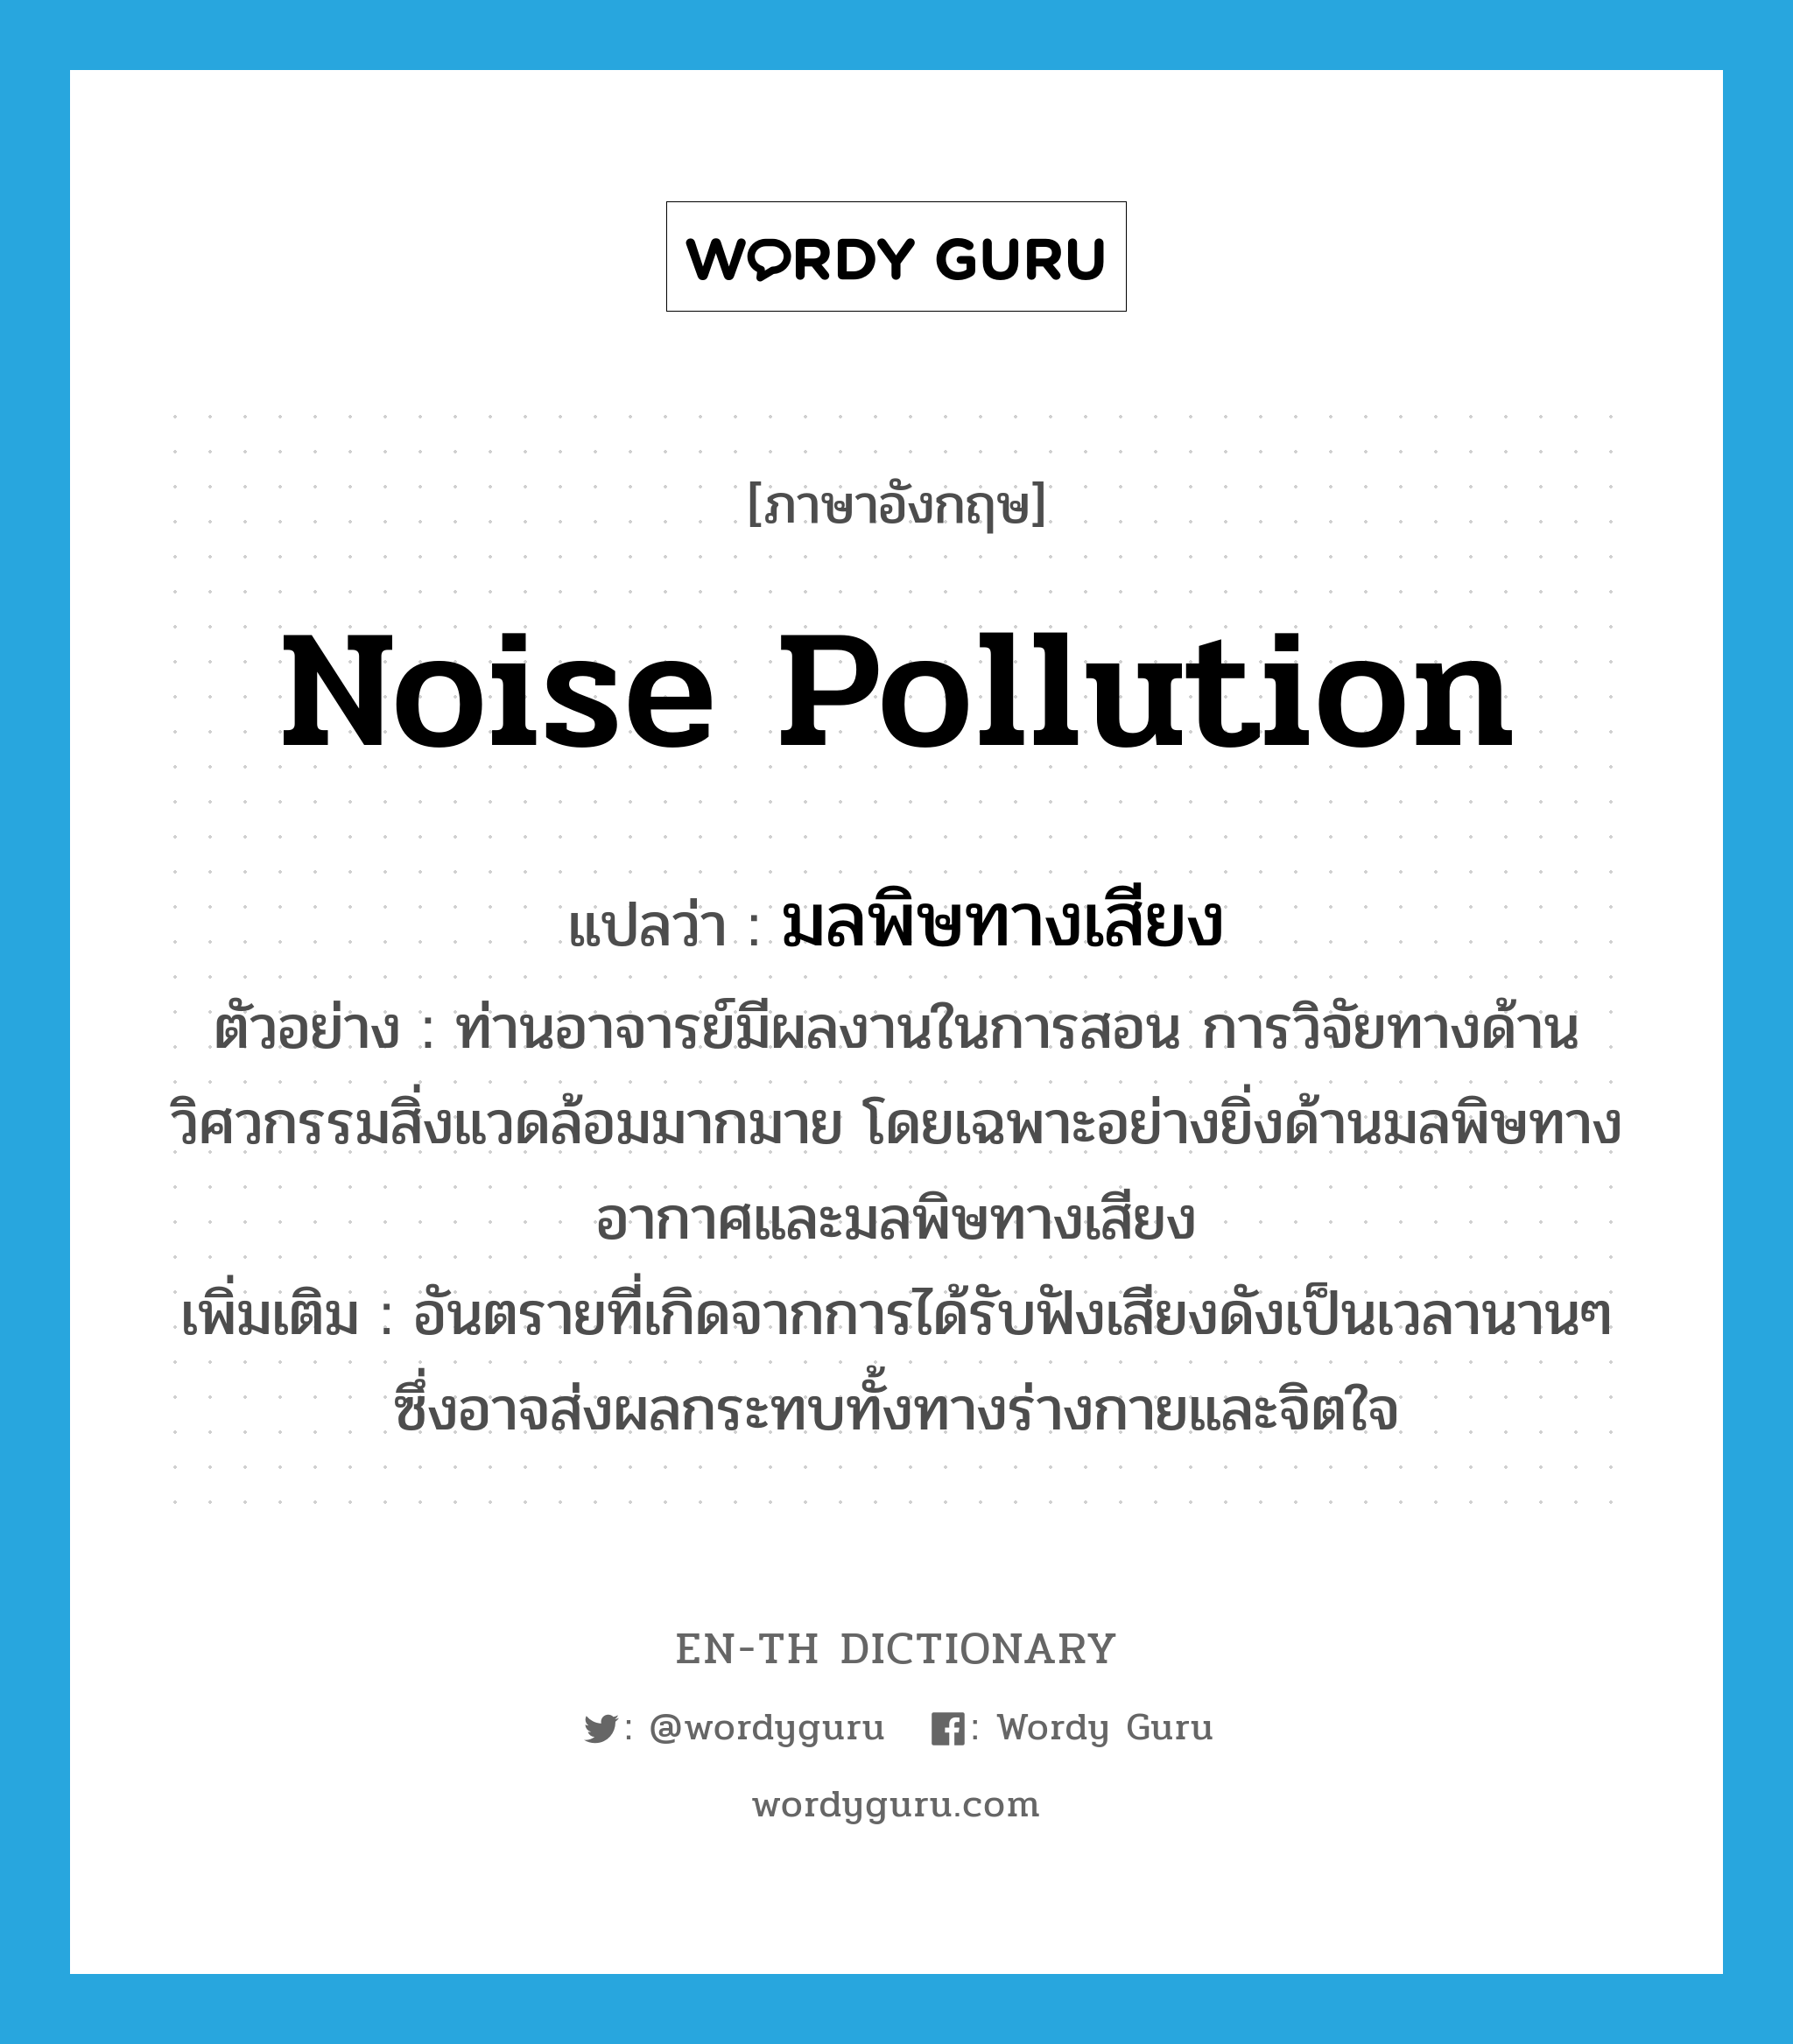 noise pollution แปลว่า?, คำศัพท์ภาษาอังกฤษ noise pollution แปลว่า มลพิษทางเสียง ประเภท N ตัวอย่าง ท่านอาจารย์มีผลงานในการสอน การวิจัยทางด้านวิศวกรรมสิ่งแวดล้อมมากมาย โดยเฉพาะอย่างยิ่งด้านมลพิษทางอากาศและมลพิษทางเสียง เพิ่มเติม อันตรายที่เกิดจากการได้รับฟังเสียงดังเป็นเวลานานๆ ซึ่งอาจส่งผลกระทบทั้งทางร่างกายและจิตใจ หมวด N